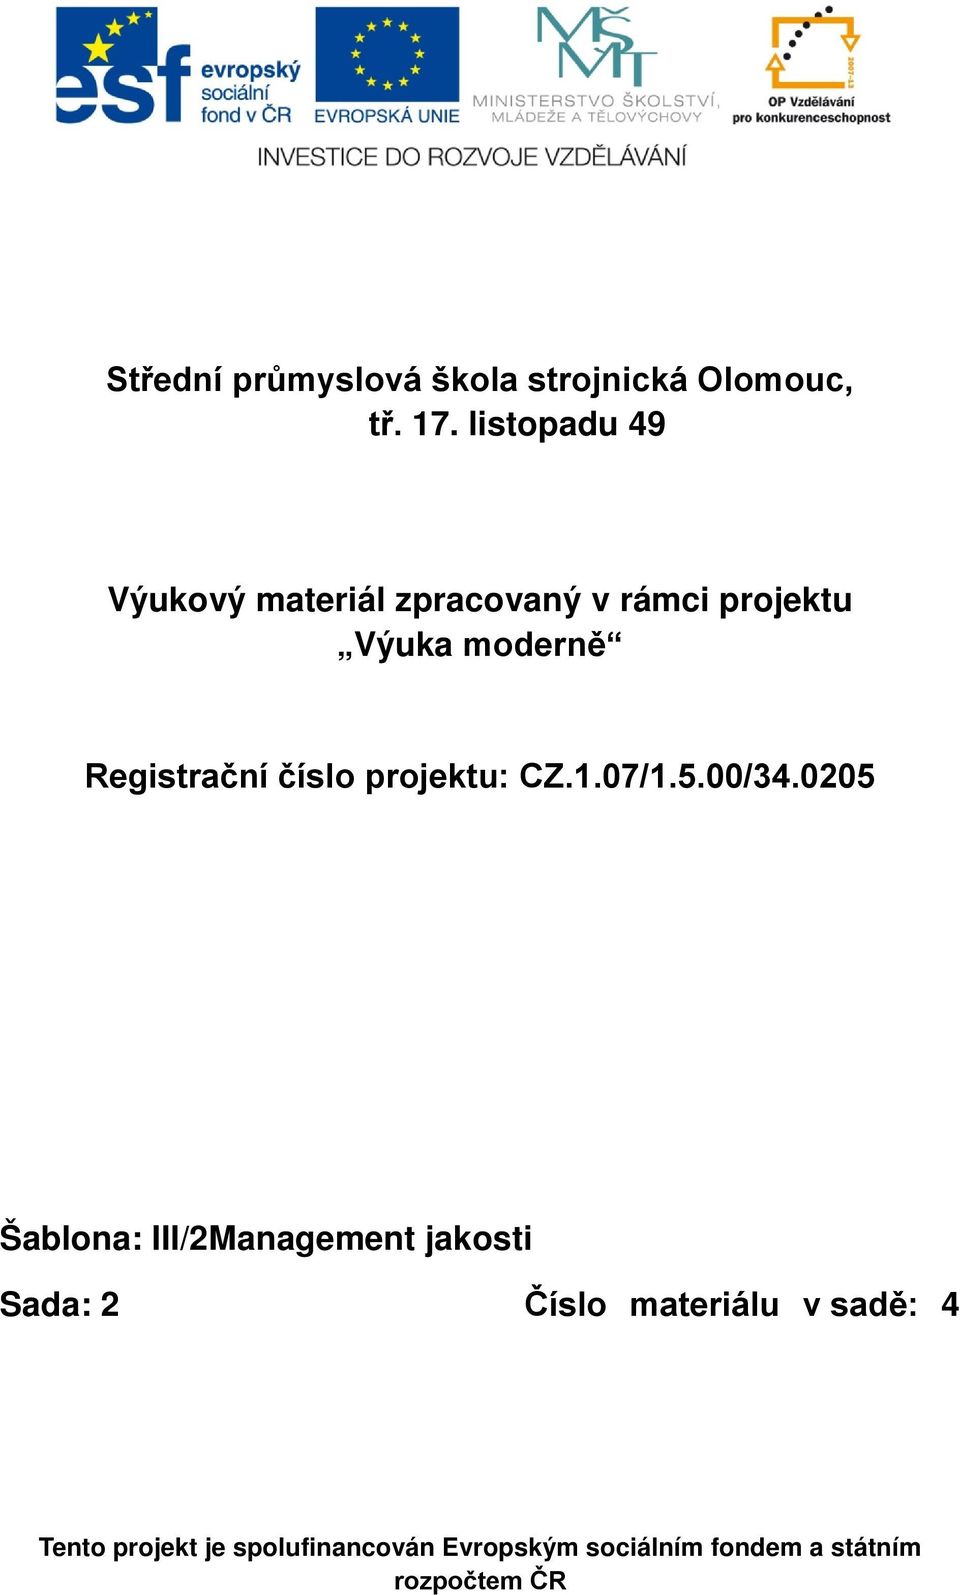 Registrační číslo projektu: CZ.1.07/1.5.00/34.